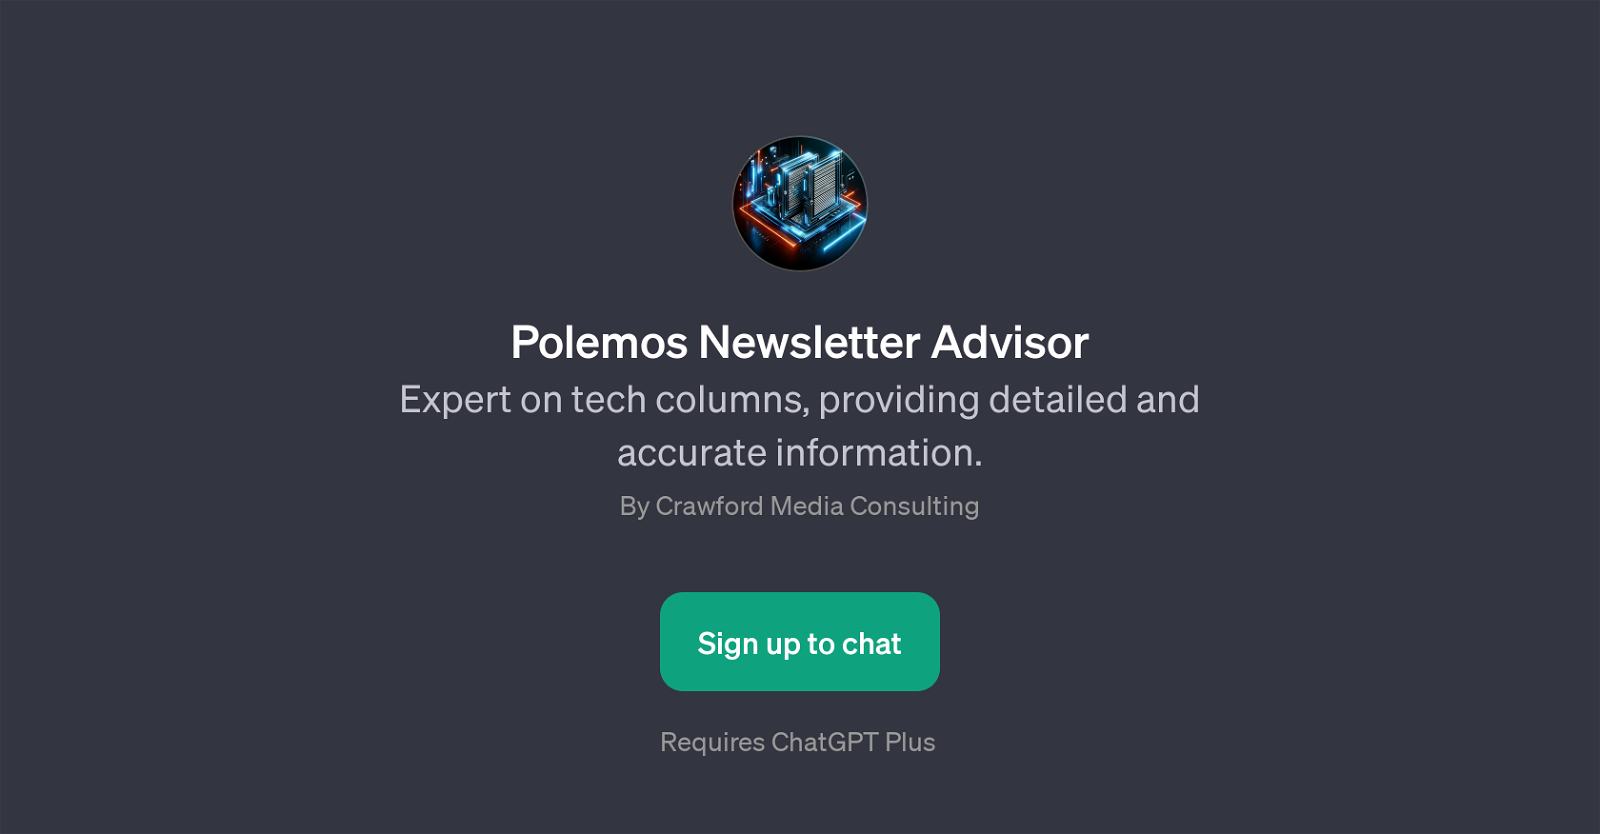 Polemos Newsletter Advisor website